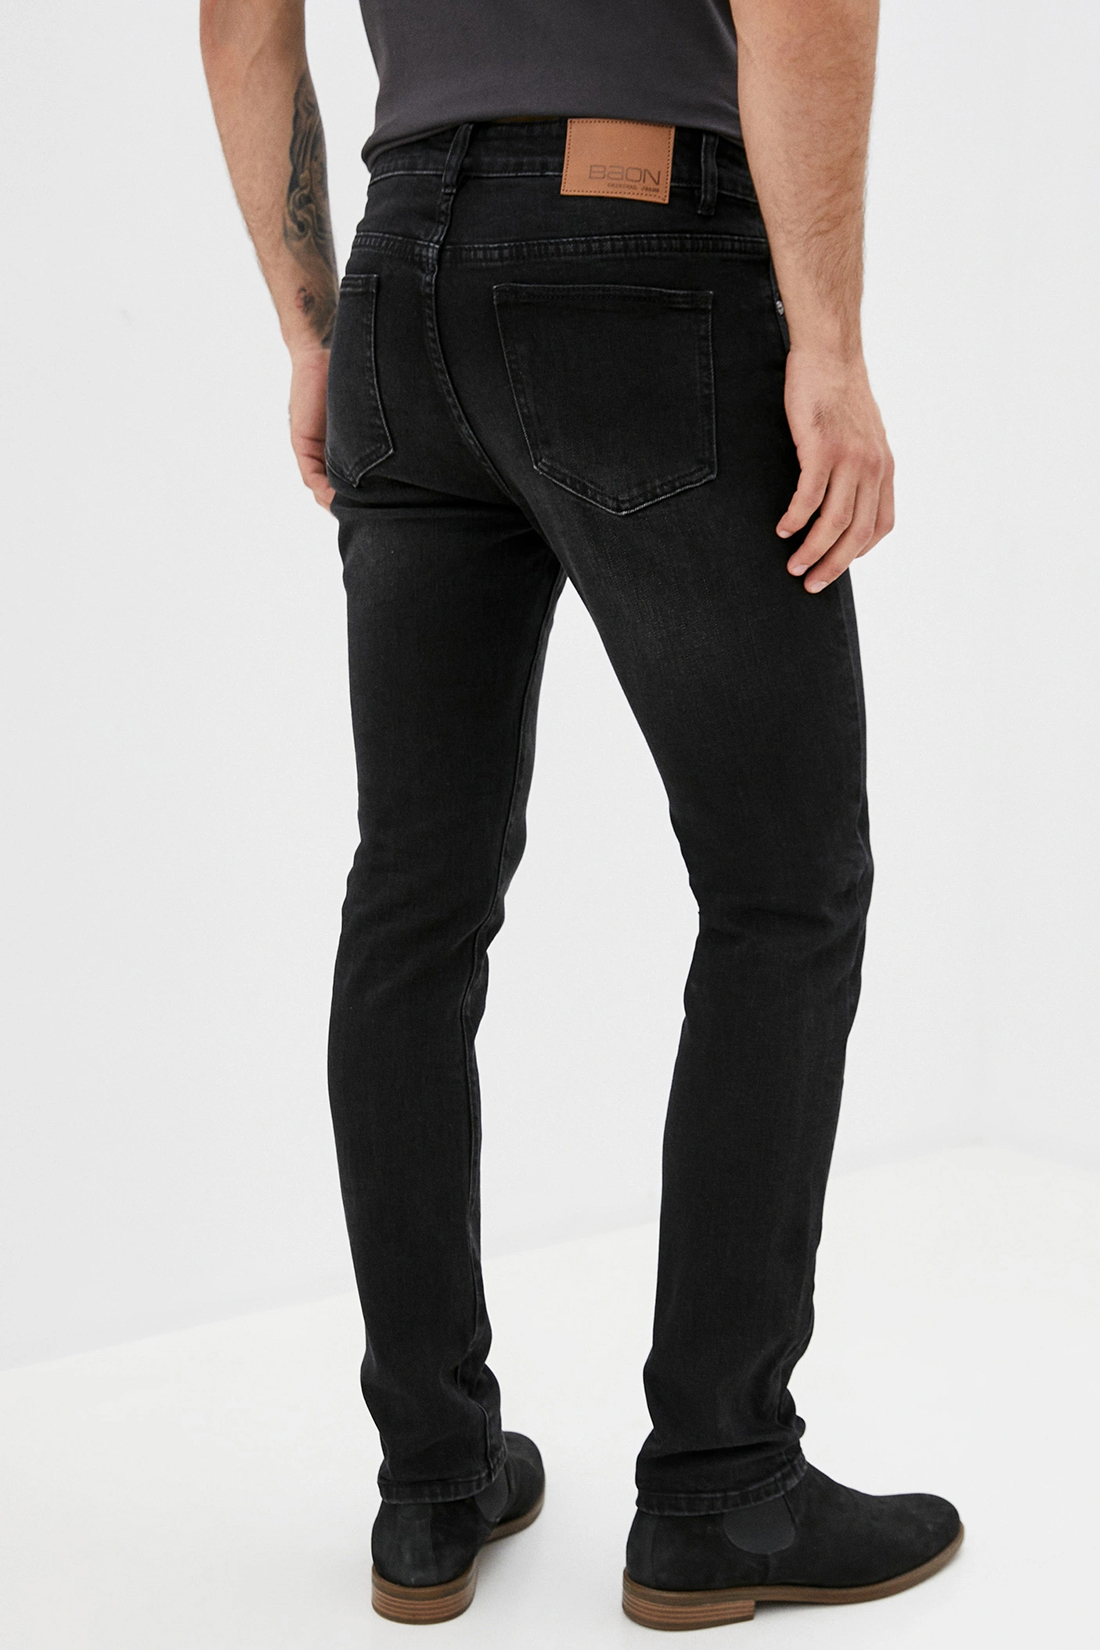 Чёрные джинсы (арт. baon B800503), размер 36, цвет black denim#черный Чёрные джинсы (арт. baon B800503) - фото 2